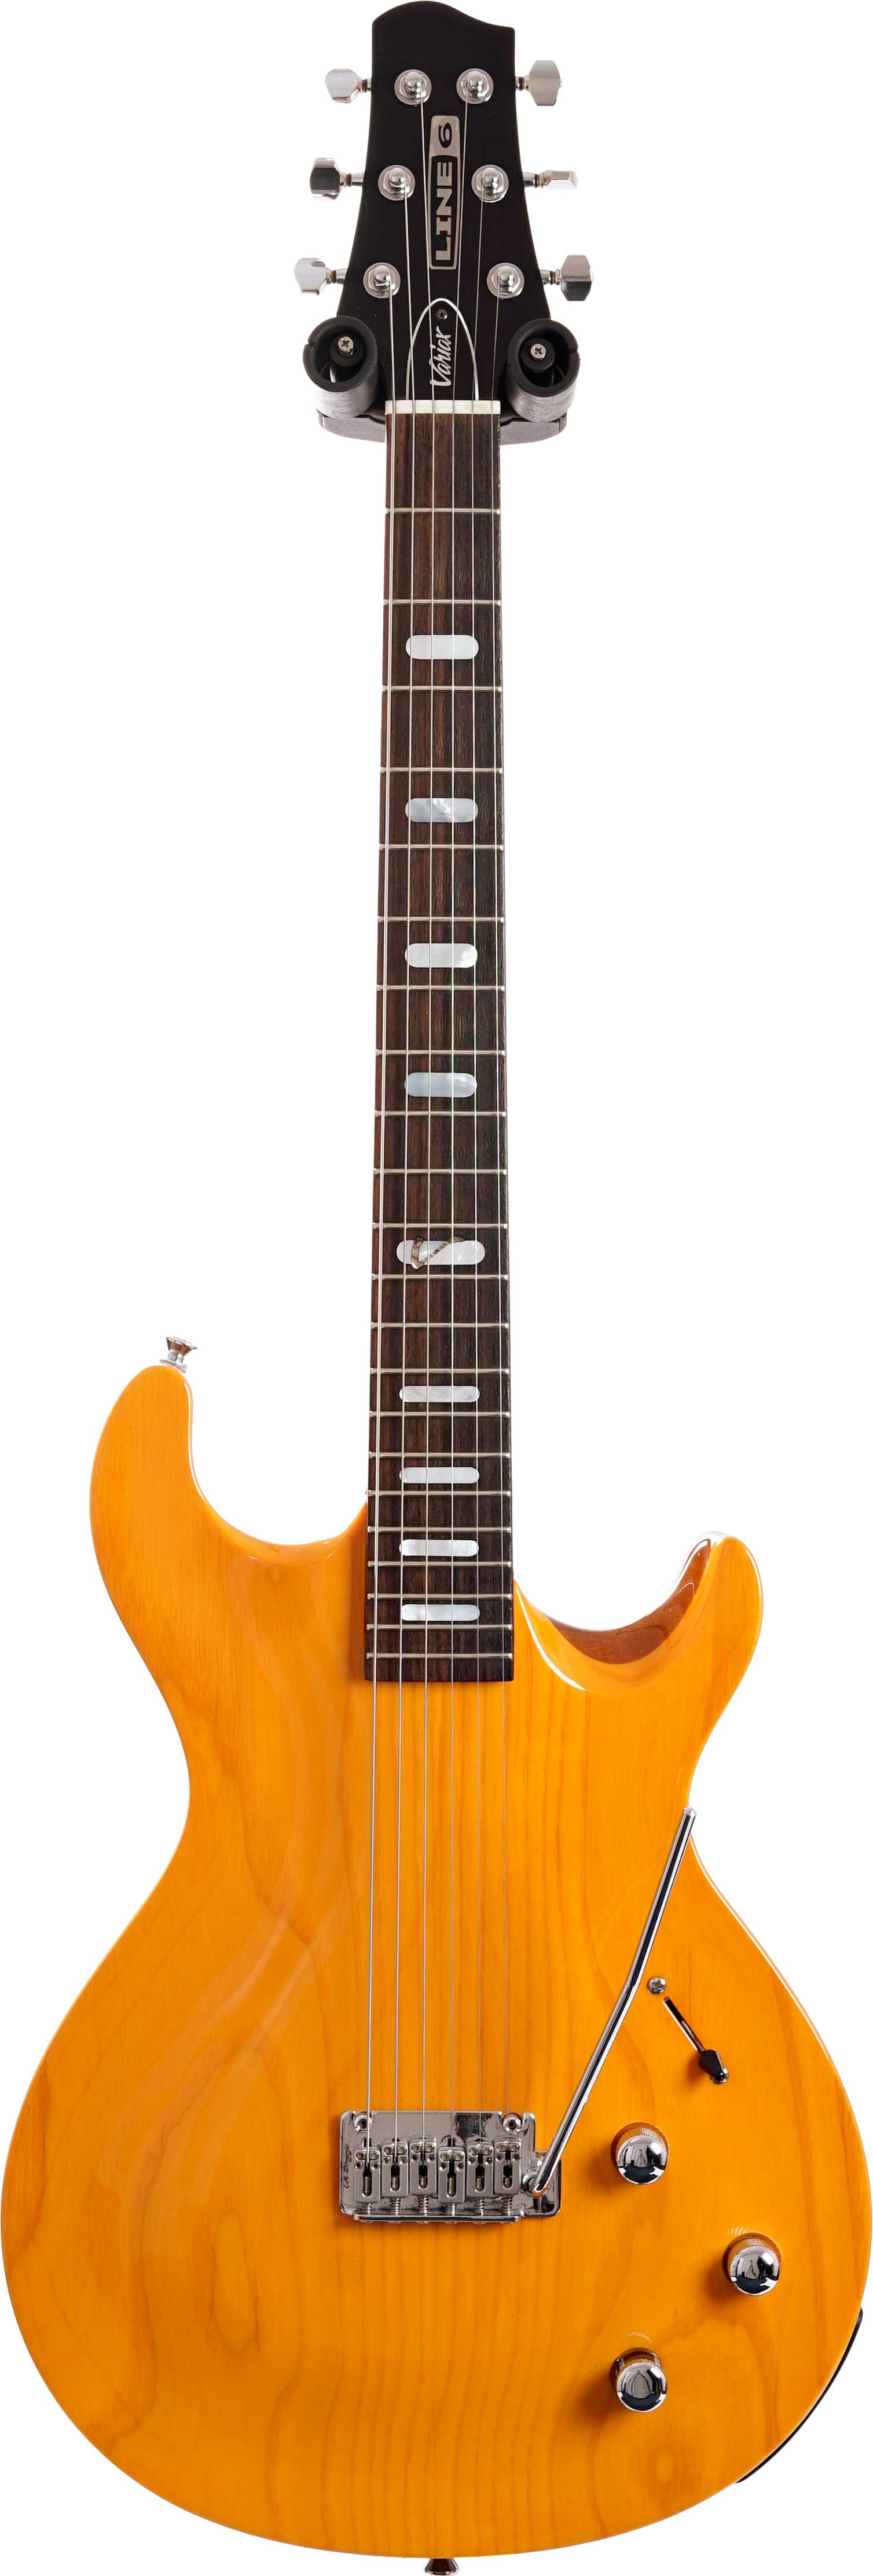 即発送可LINE6 Variax700 フジゲン製 ギター